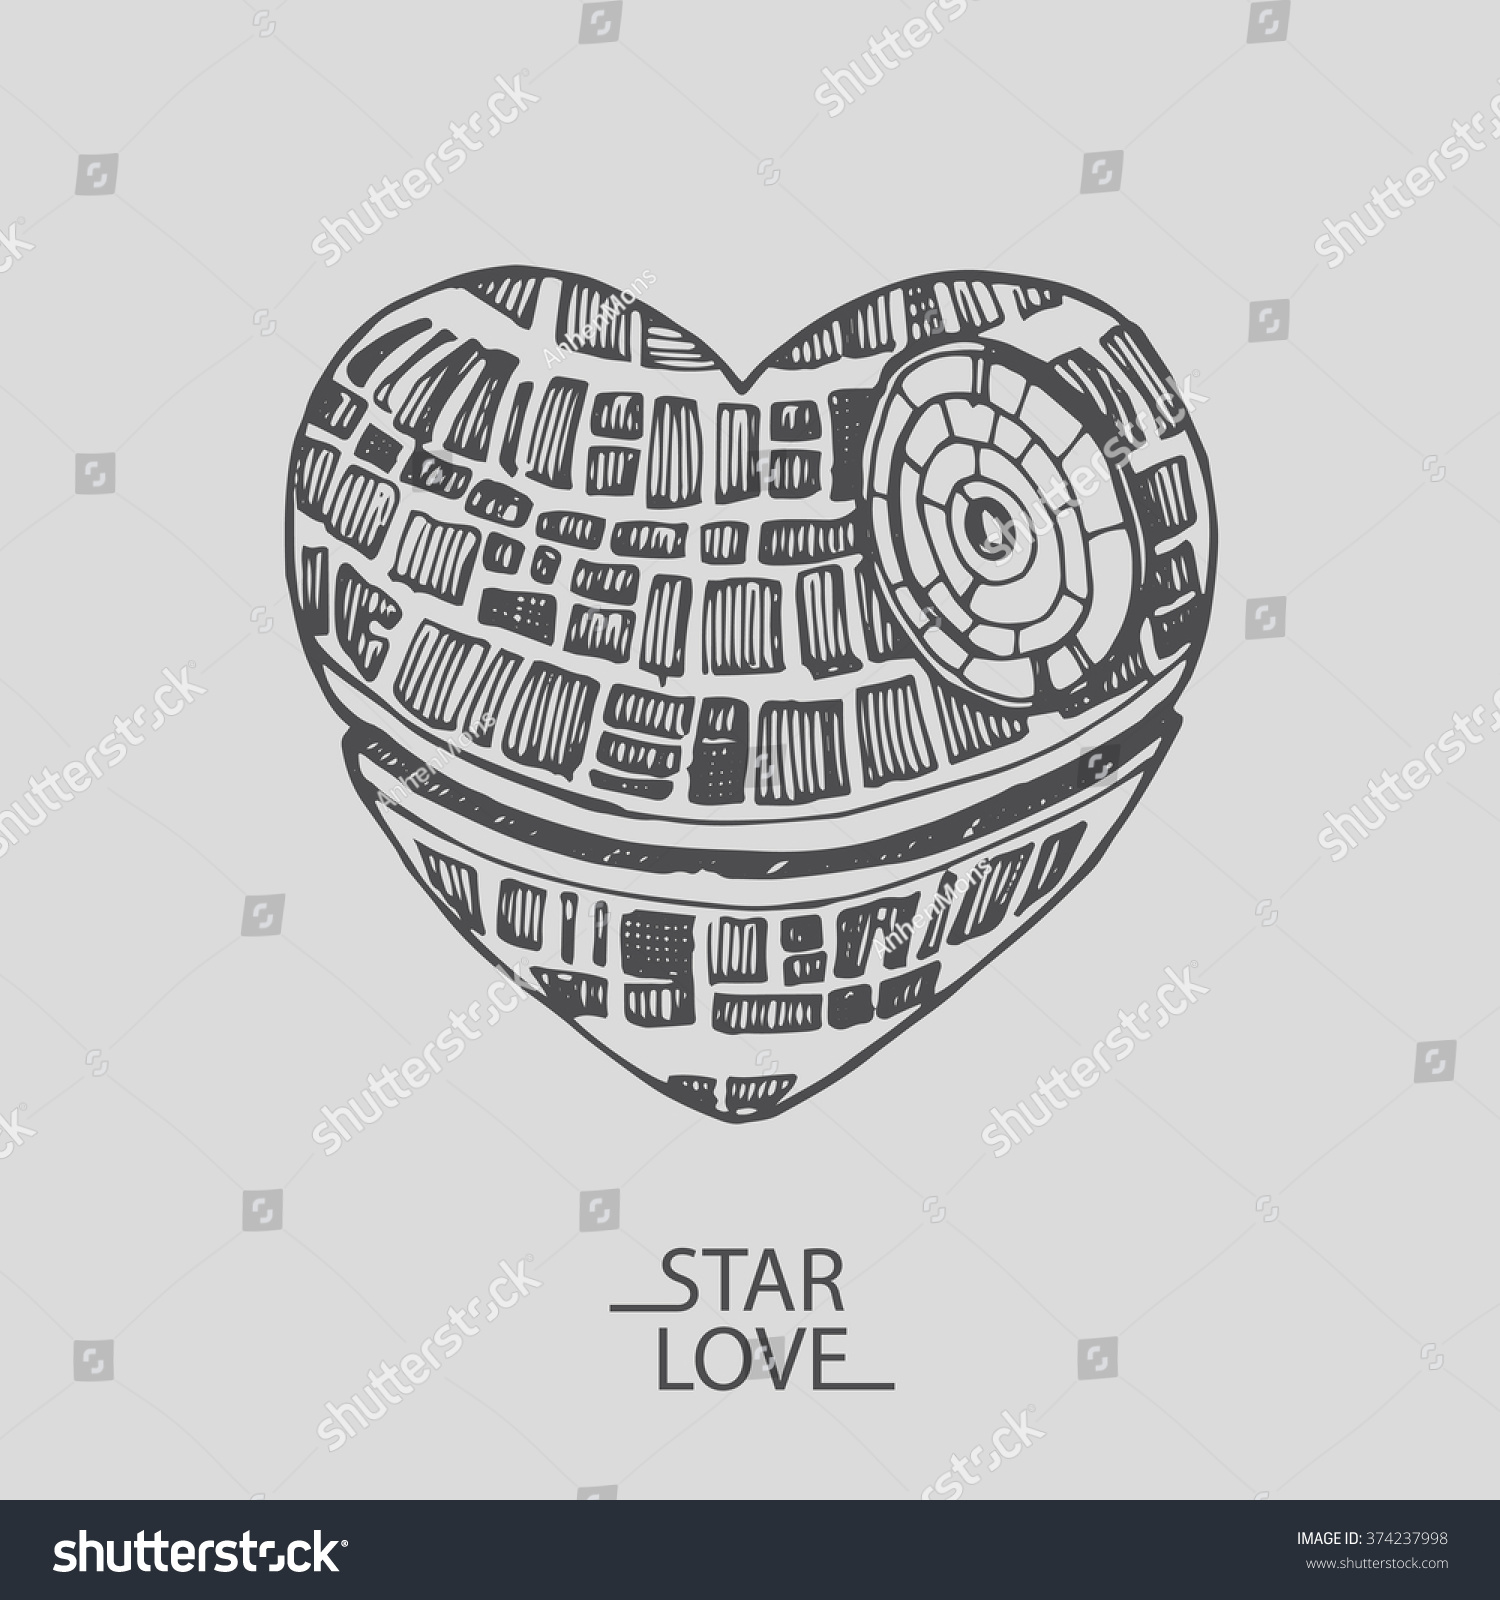 Sketch Illustration Love Heart Star Wars Stock Vector 374237998 - Shutterstock